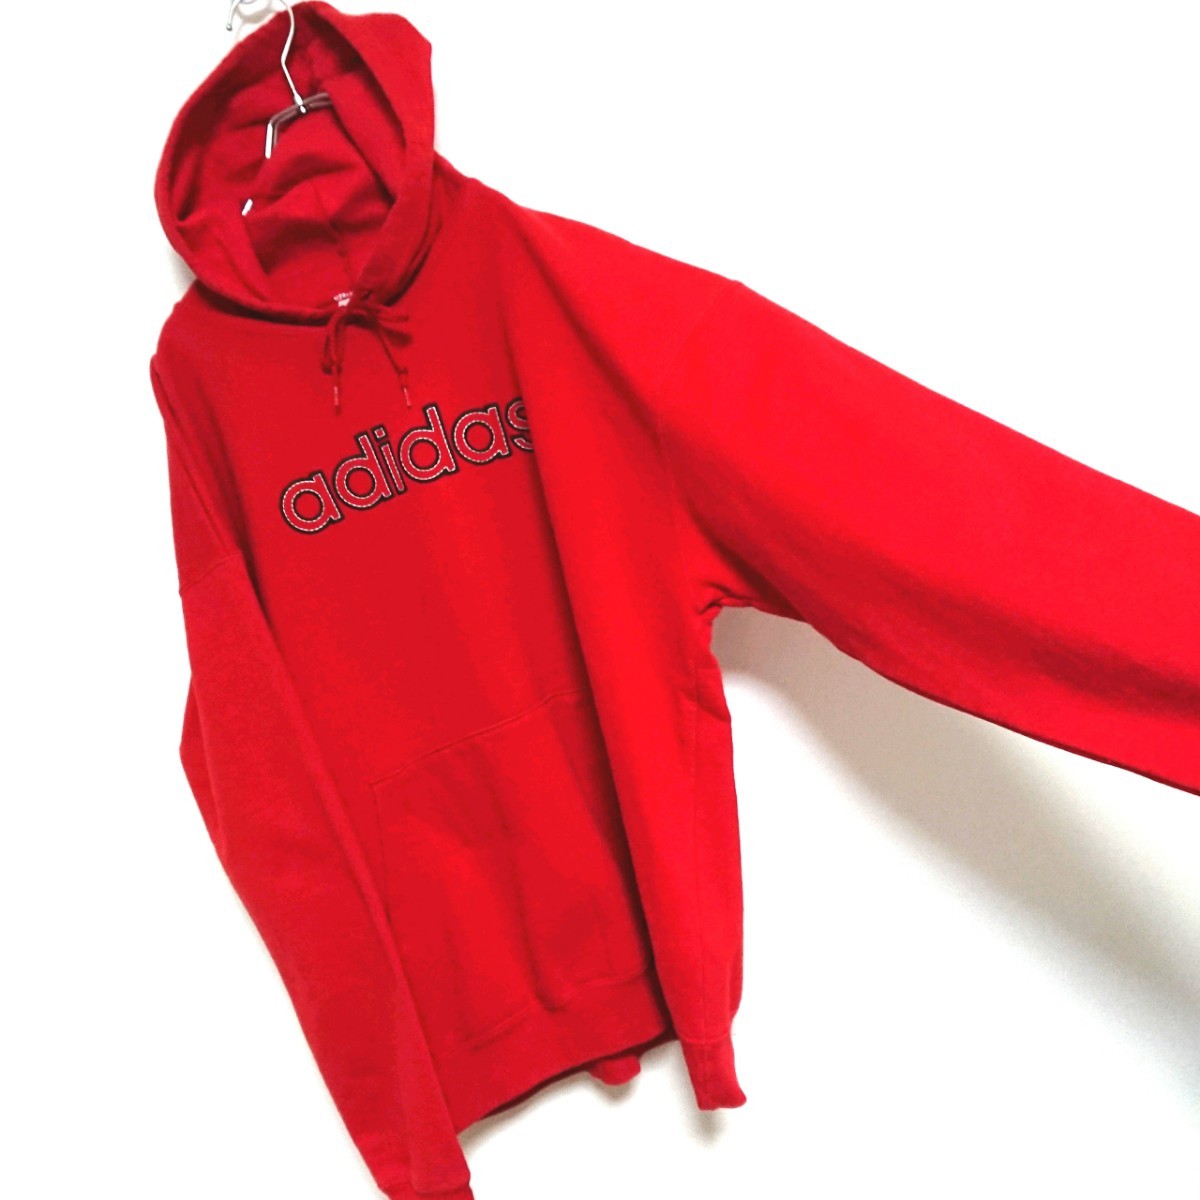 90s adidas アディダス made in Canada カナダ製 ビッグサイズ  刺繍デカロゴ赤色 パーカー フーディー 